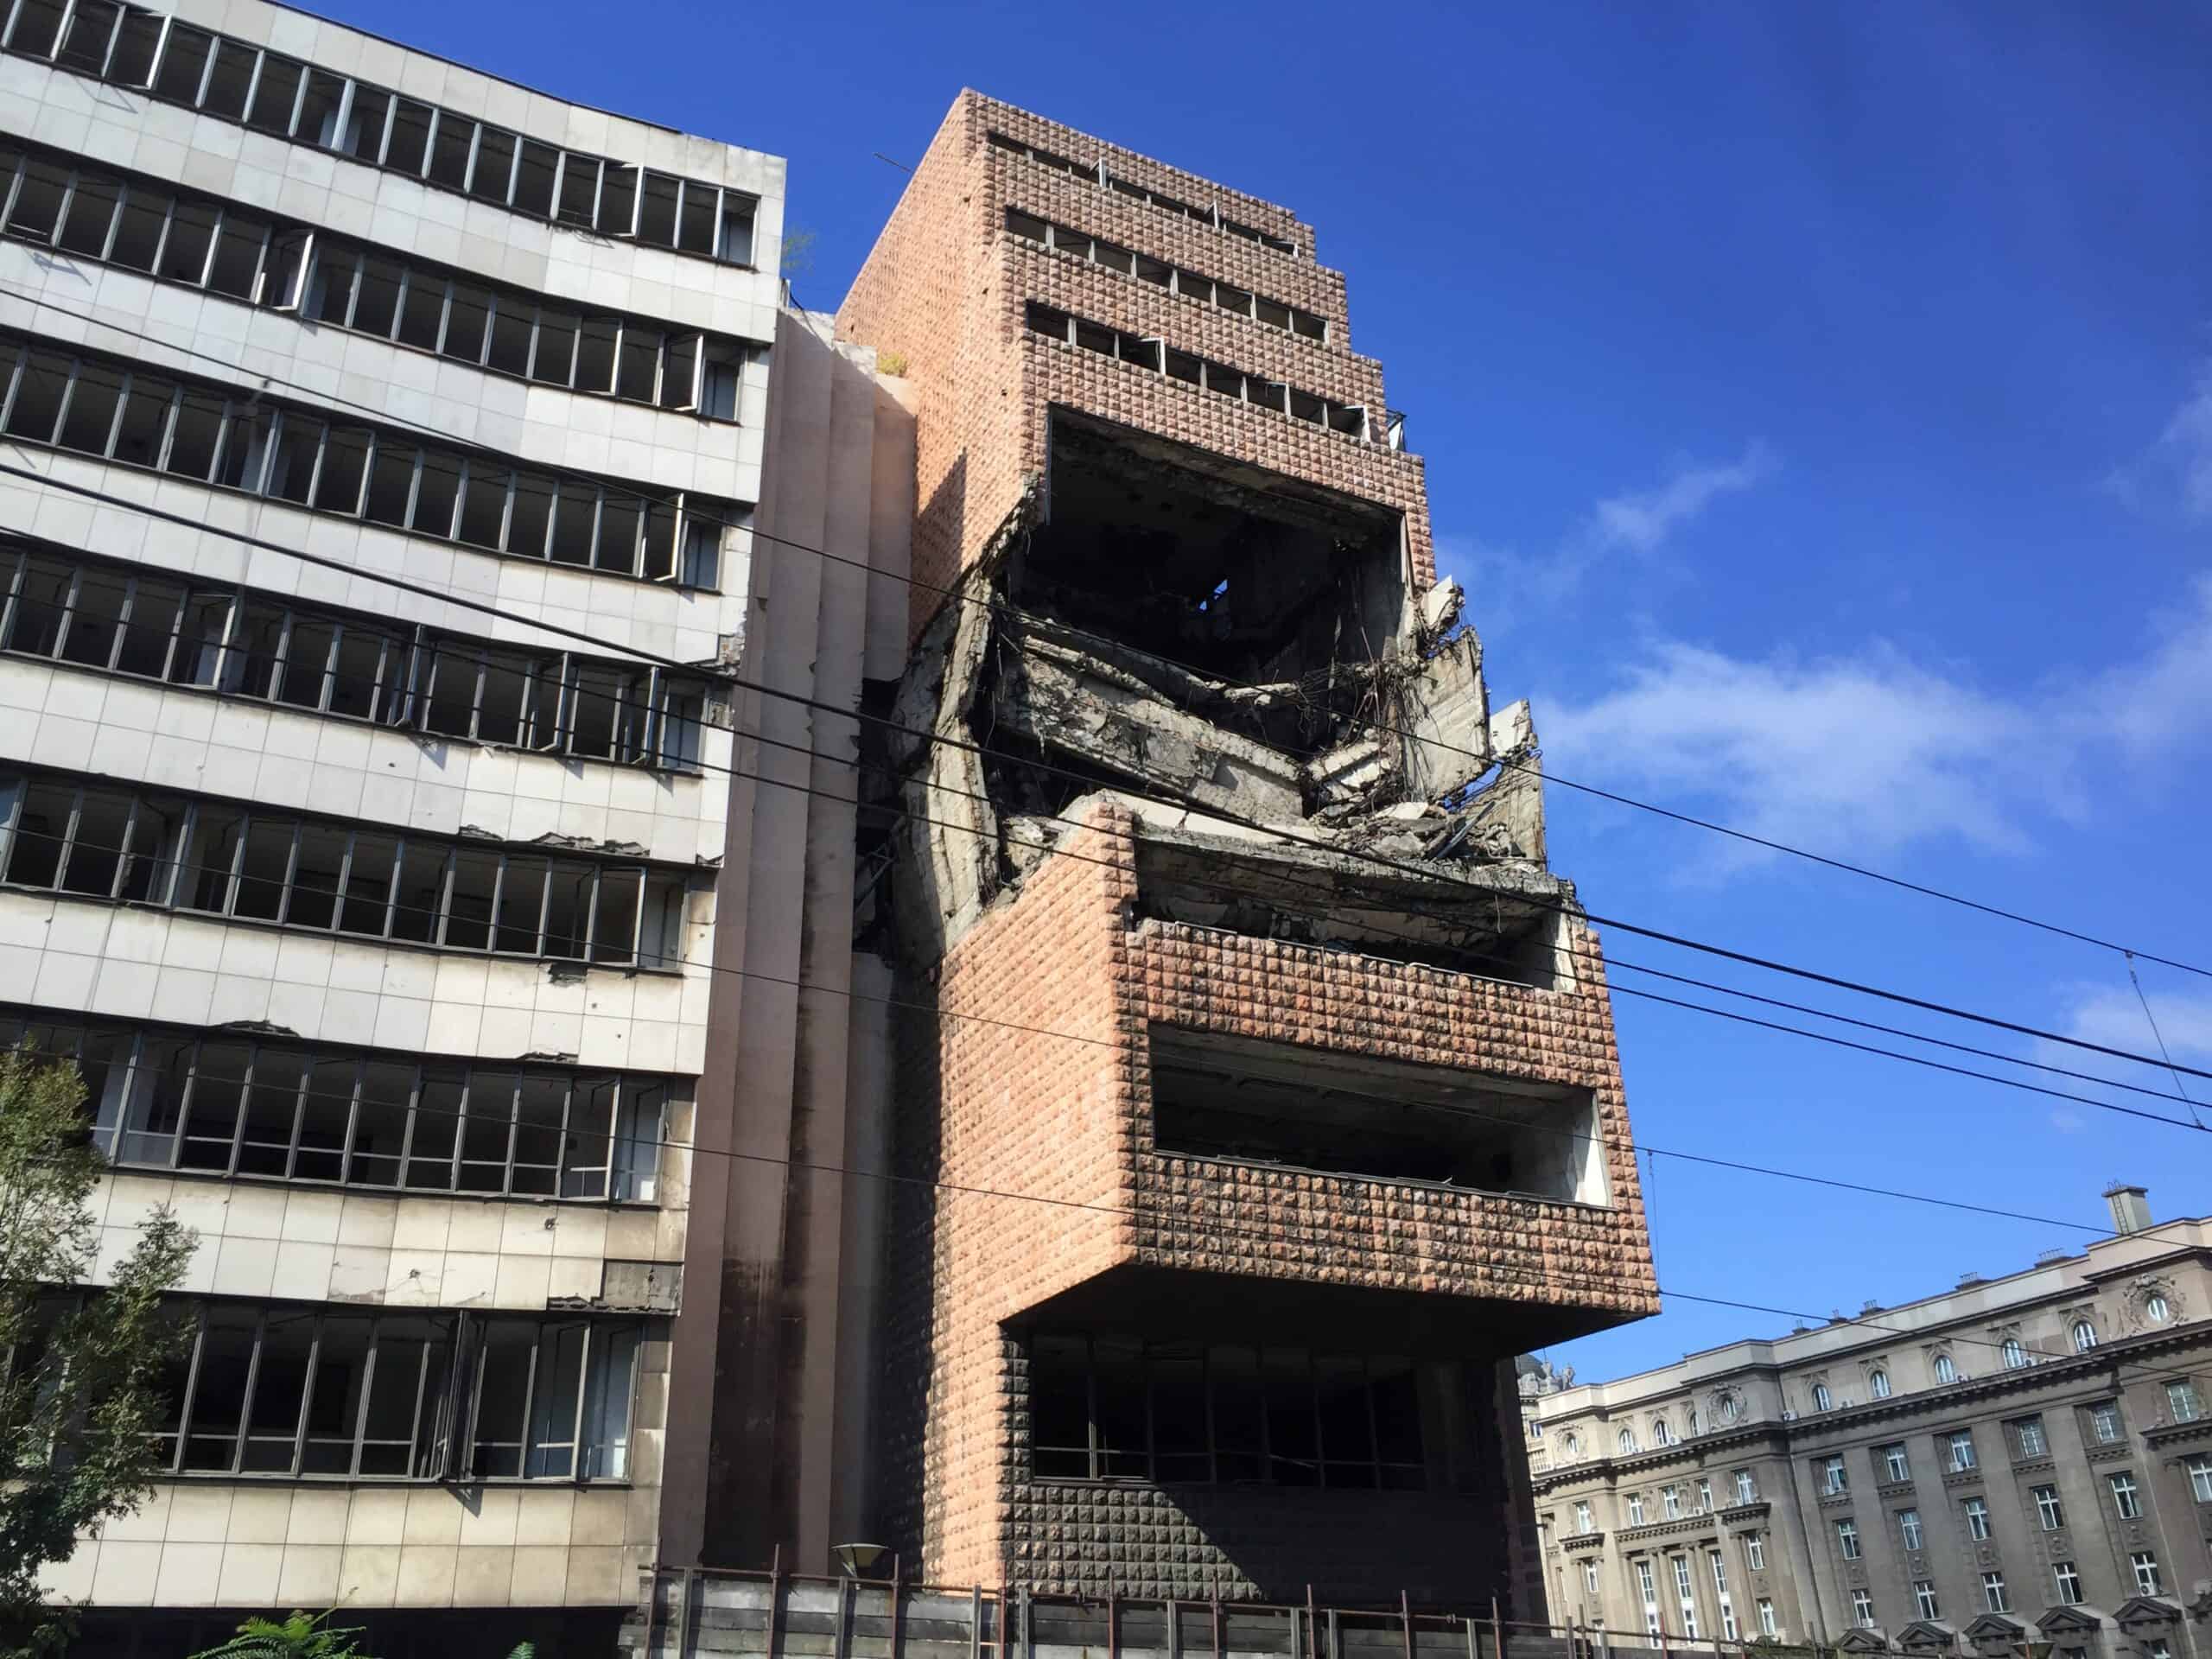 Palazzi bombardati dalla NATO – Belgrado